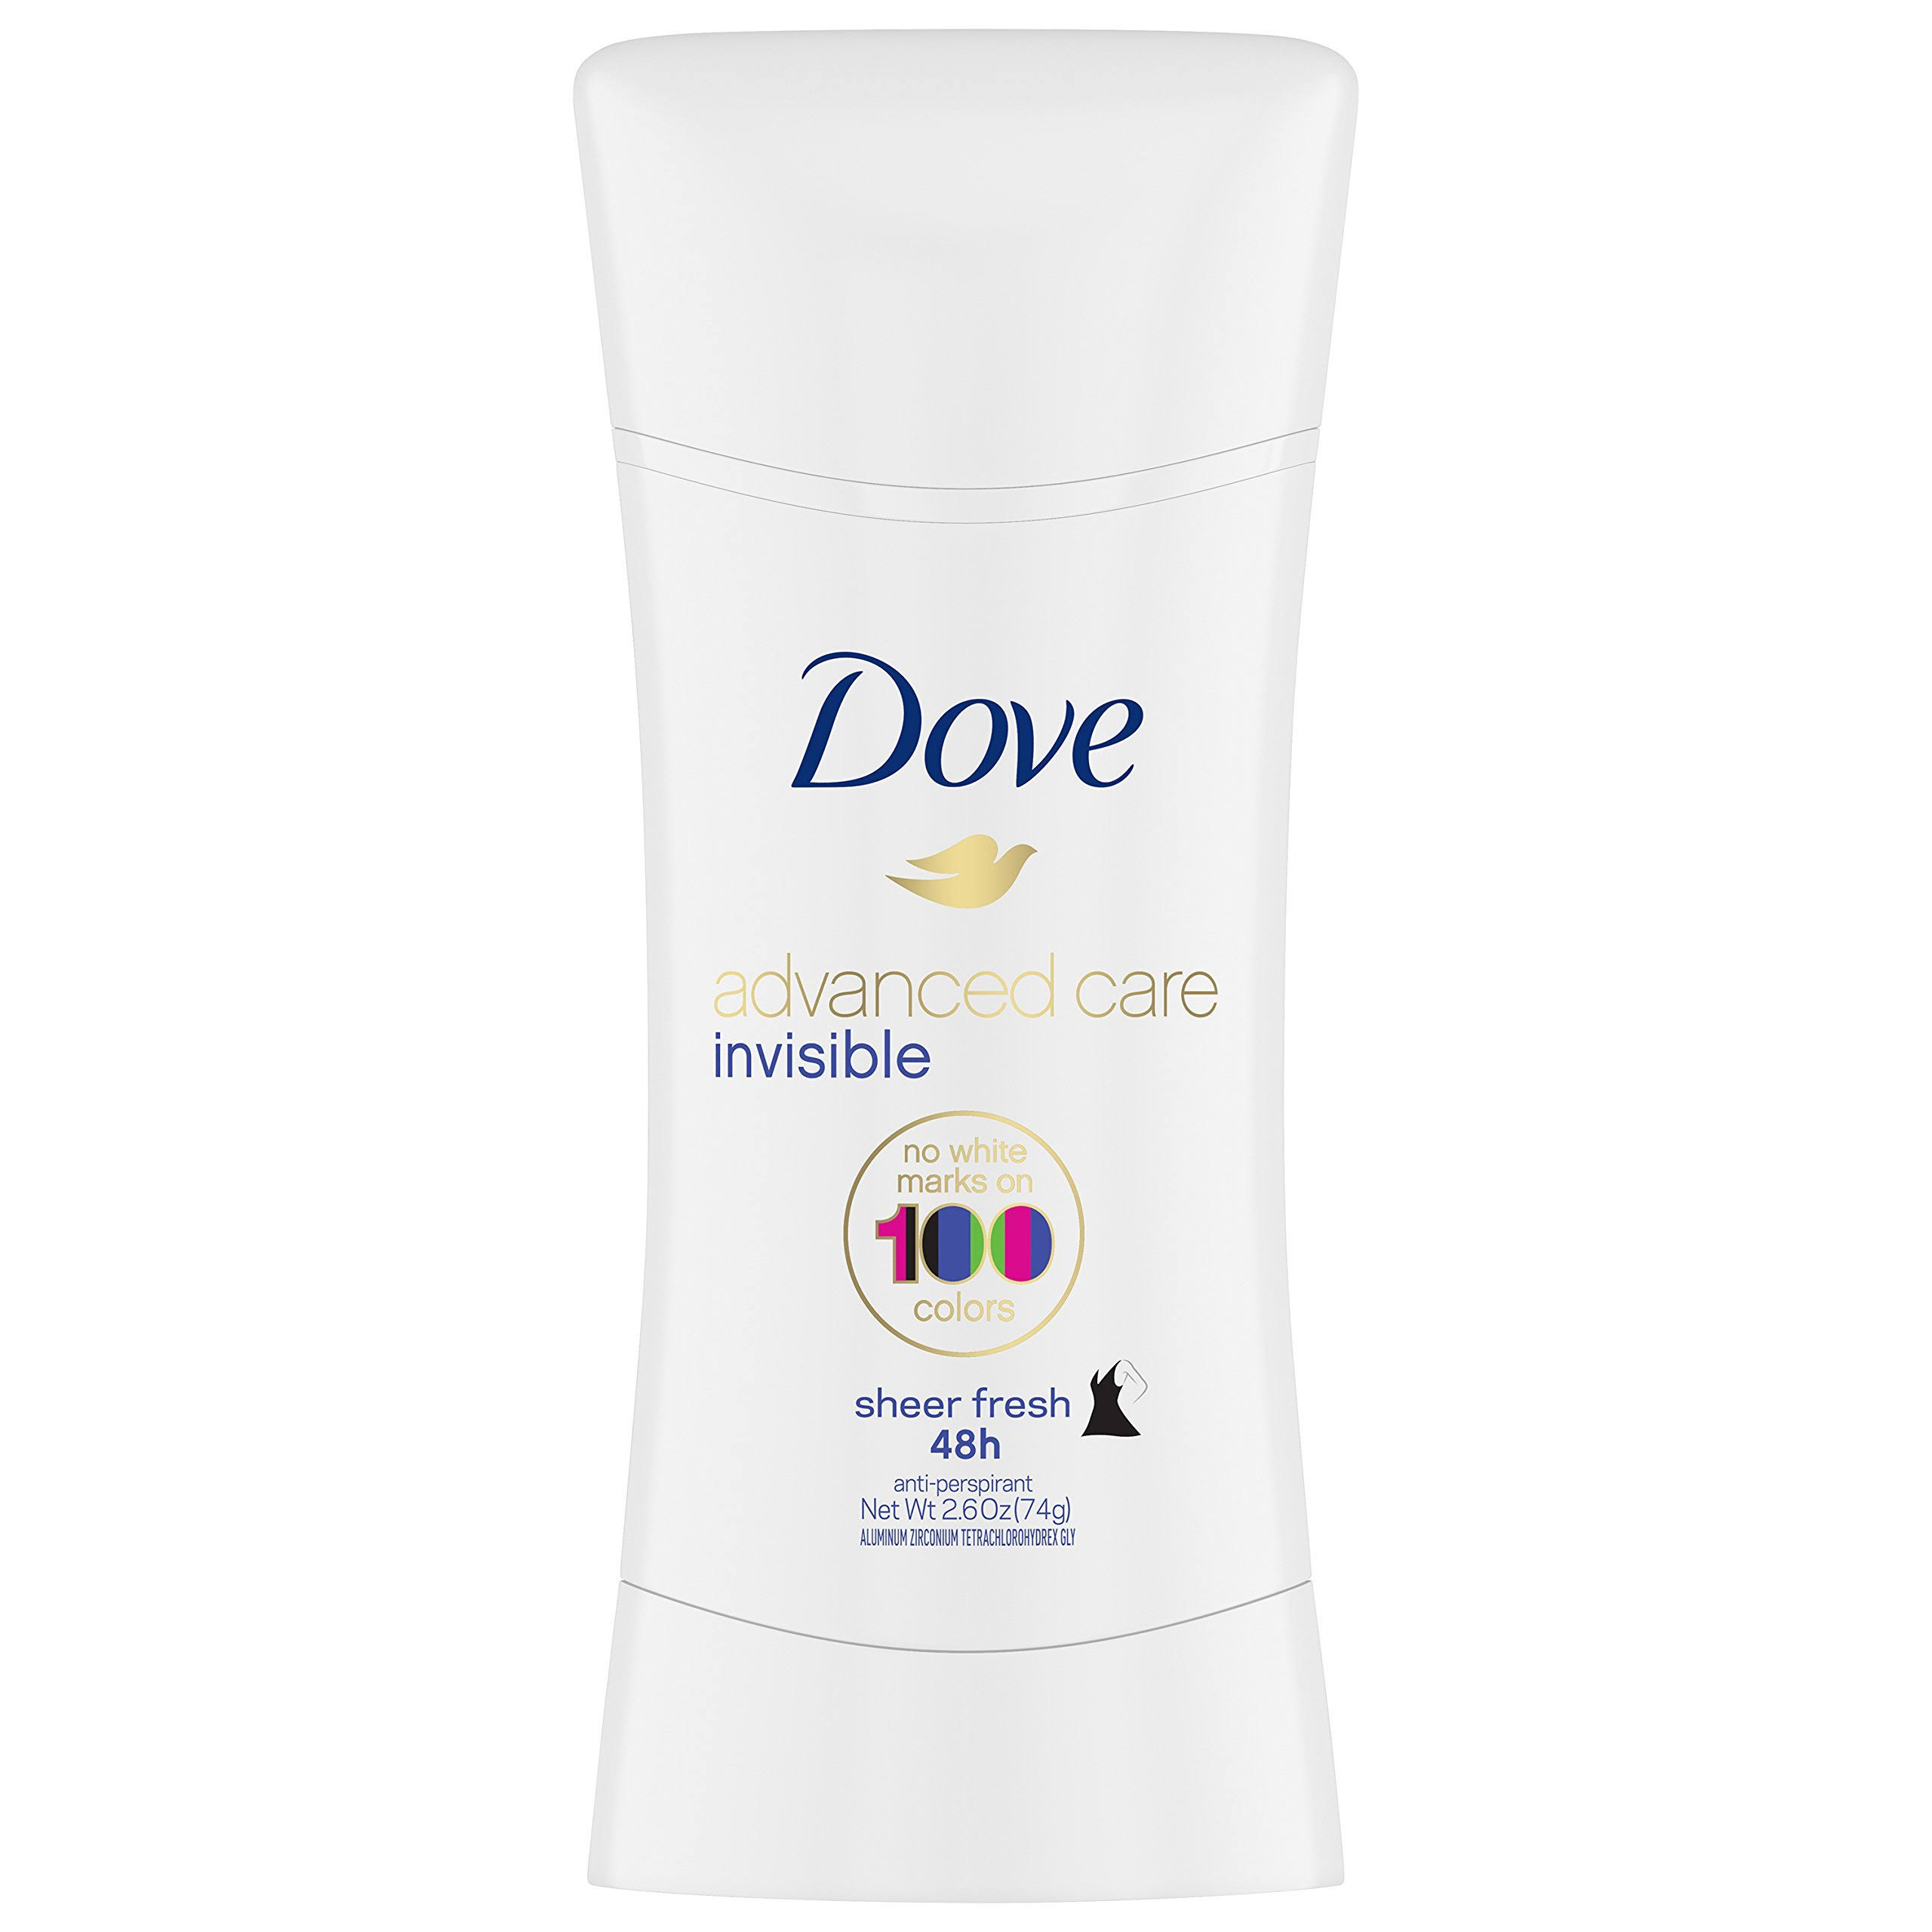 Dove Advanced Care Invisible 48h Anti-Perspirant - Sheer Fresh, 2.6oz